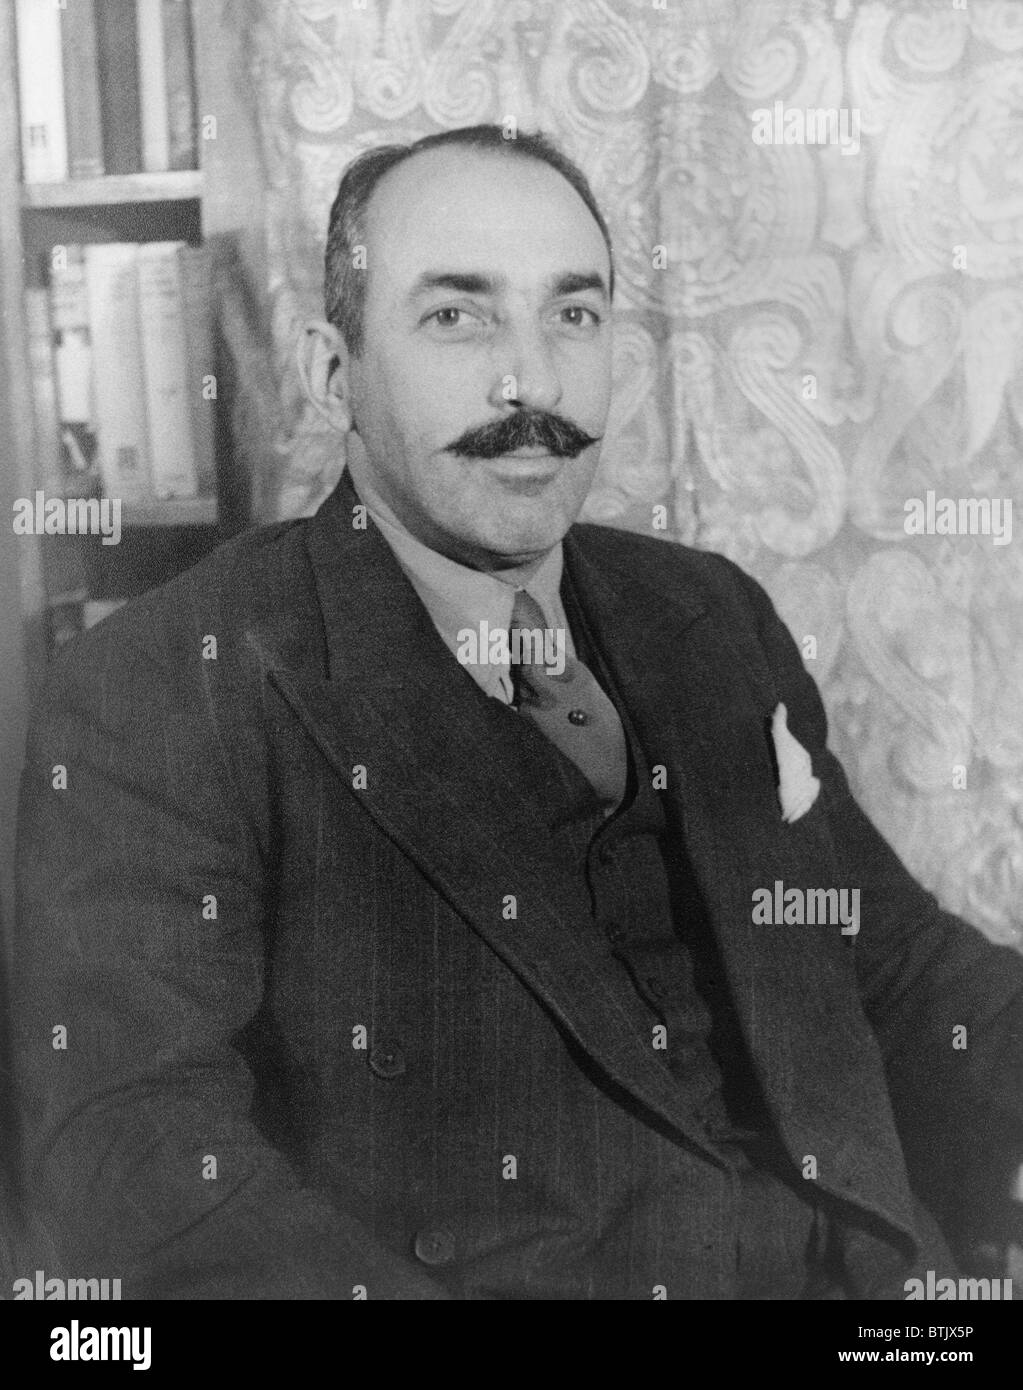 Alfred A. Knopf (1892-1984) American fondatore della casa editrice Alfred A. Knopf, Inc. nel 1915. 1935 ritratto da Carl Van Vechten. Foto Stock